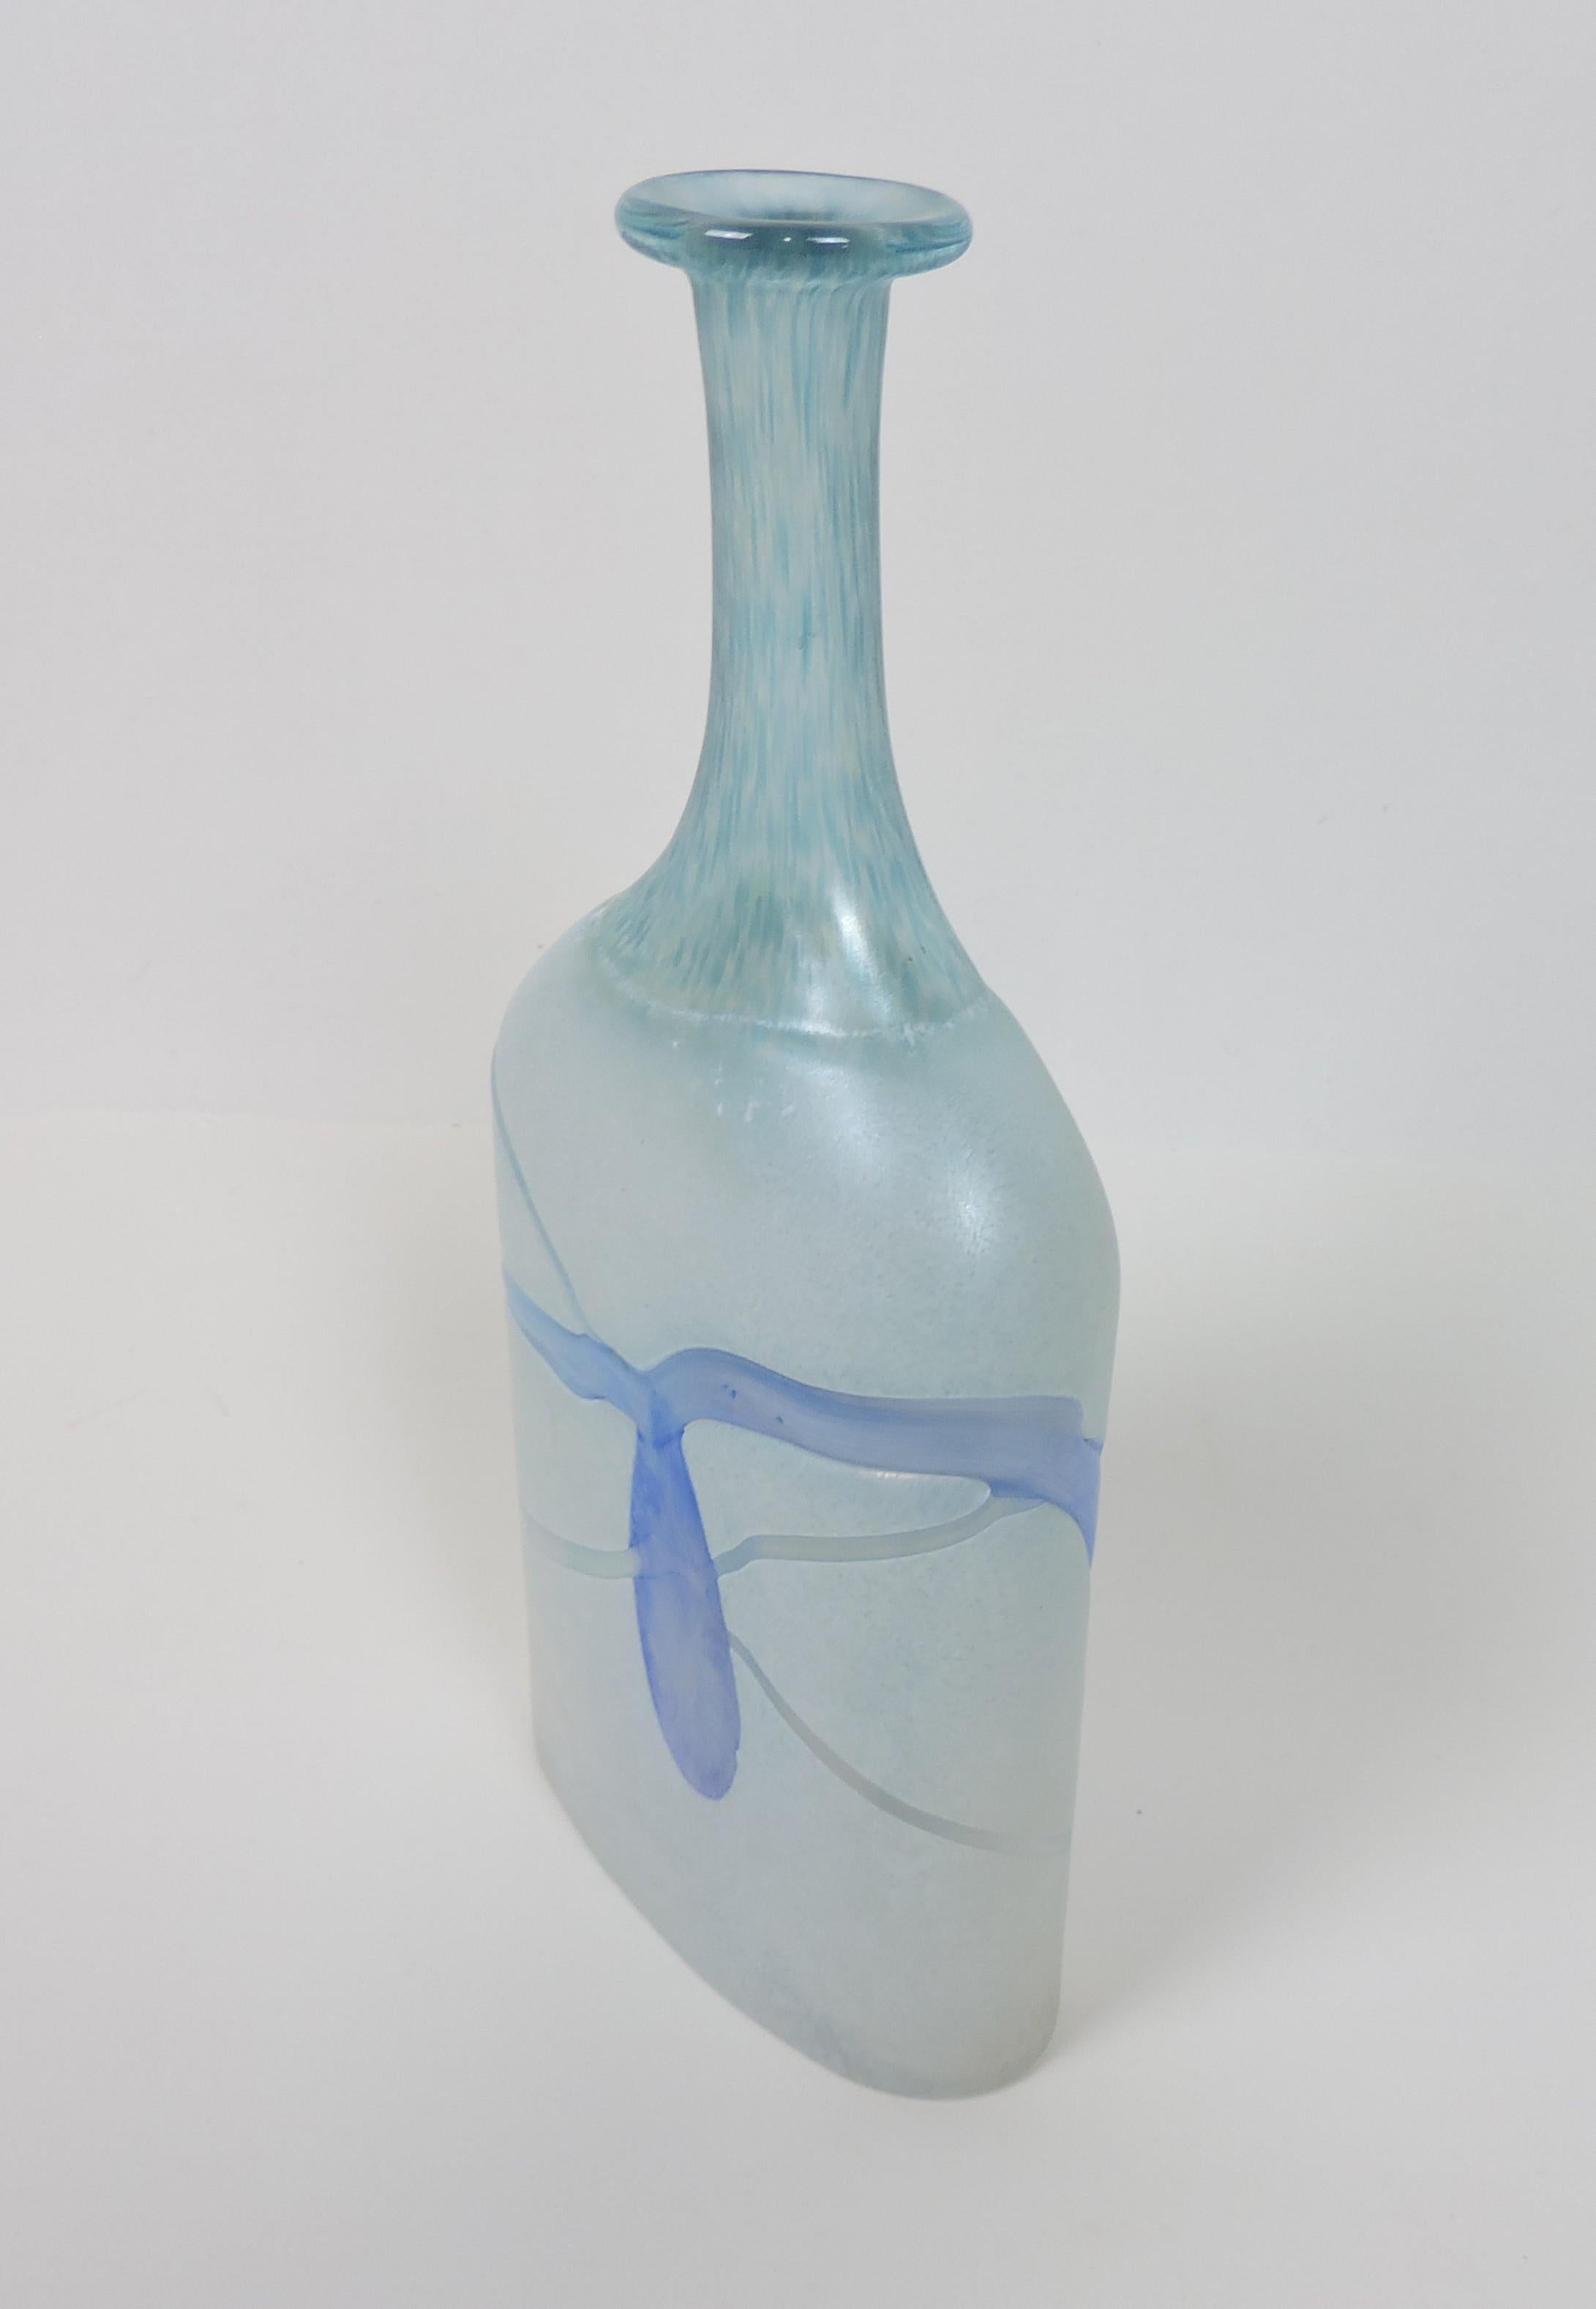 Schöne Glasvase, entworfen von Bertil Vallien und hergestellt von Kosta Boda aus Schweden. Sie gehört zur Serie Galaxy Blue aus den 1980er Jahren und ist mundgeblasen mit aufgesetzten Glasakzenten in einem abstrakten, modernen Design. Unten